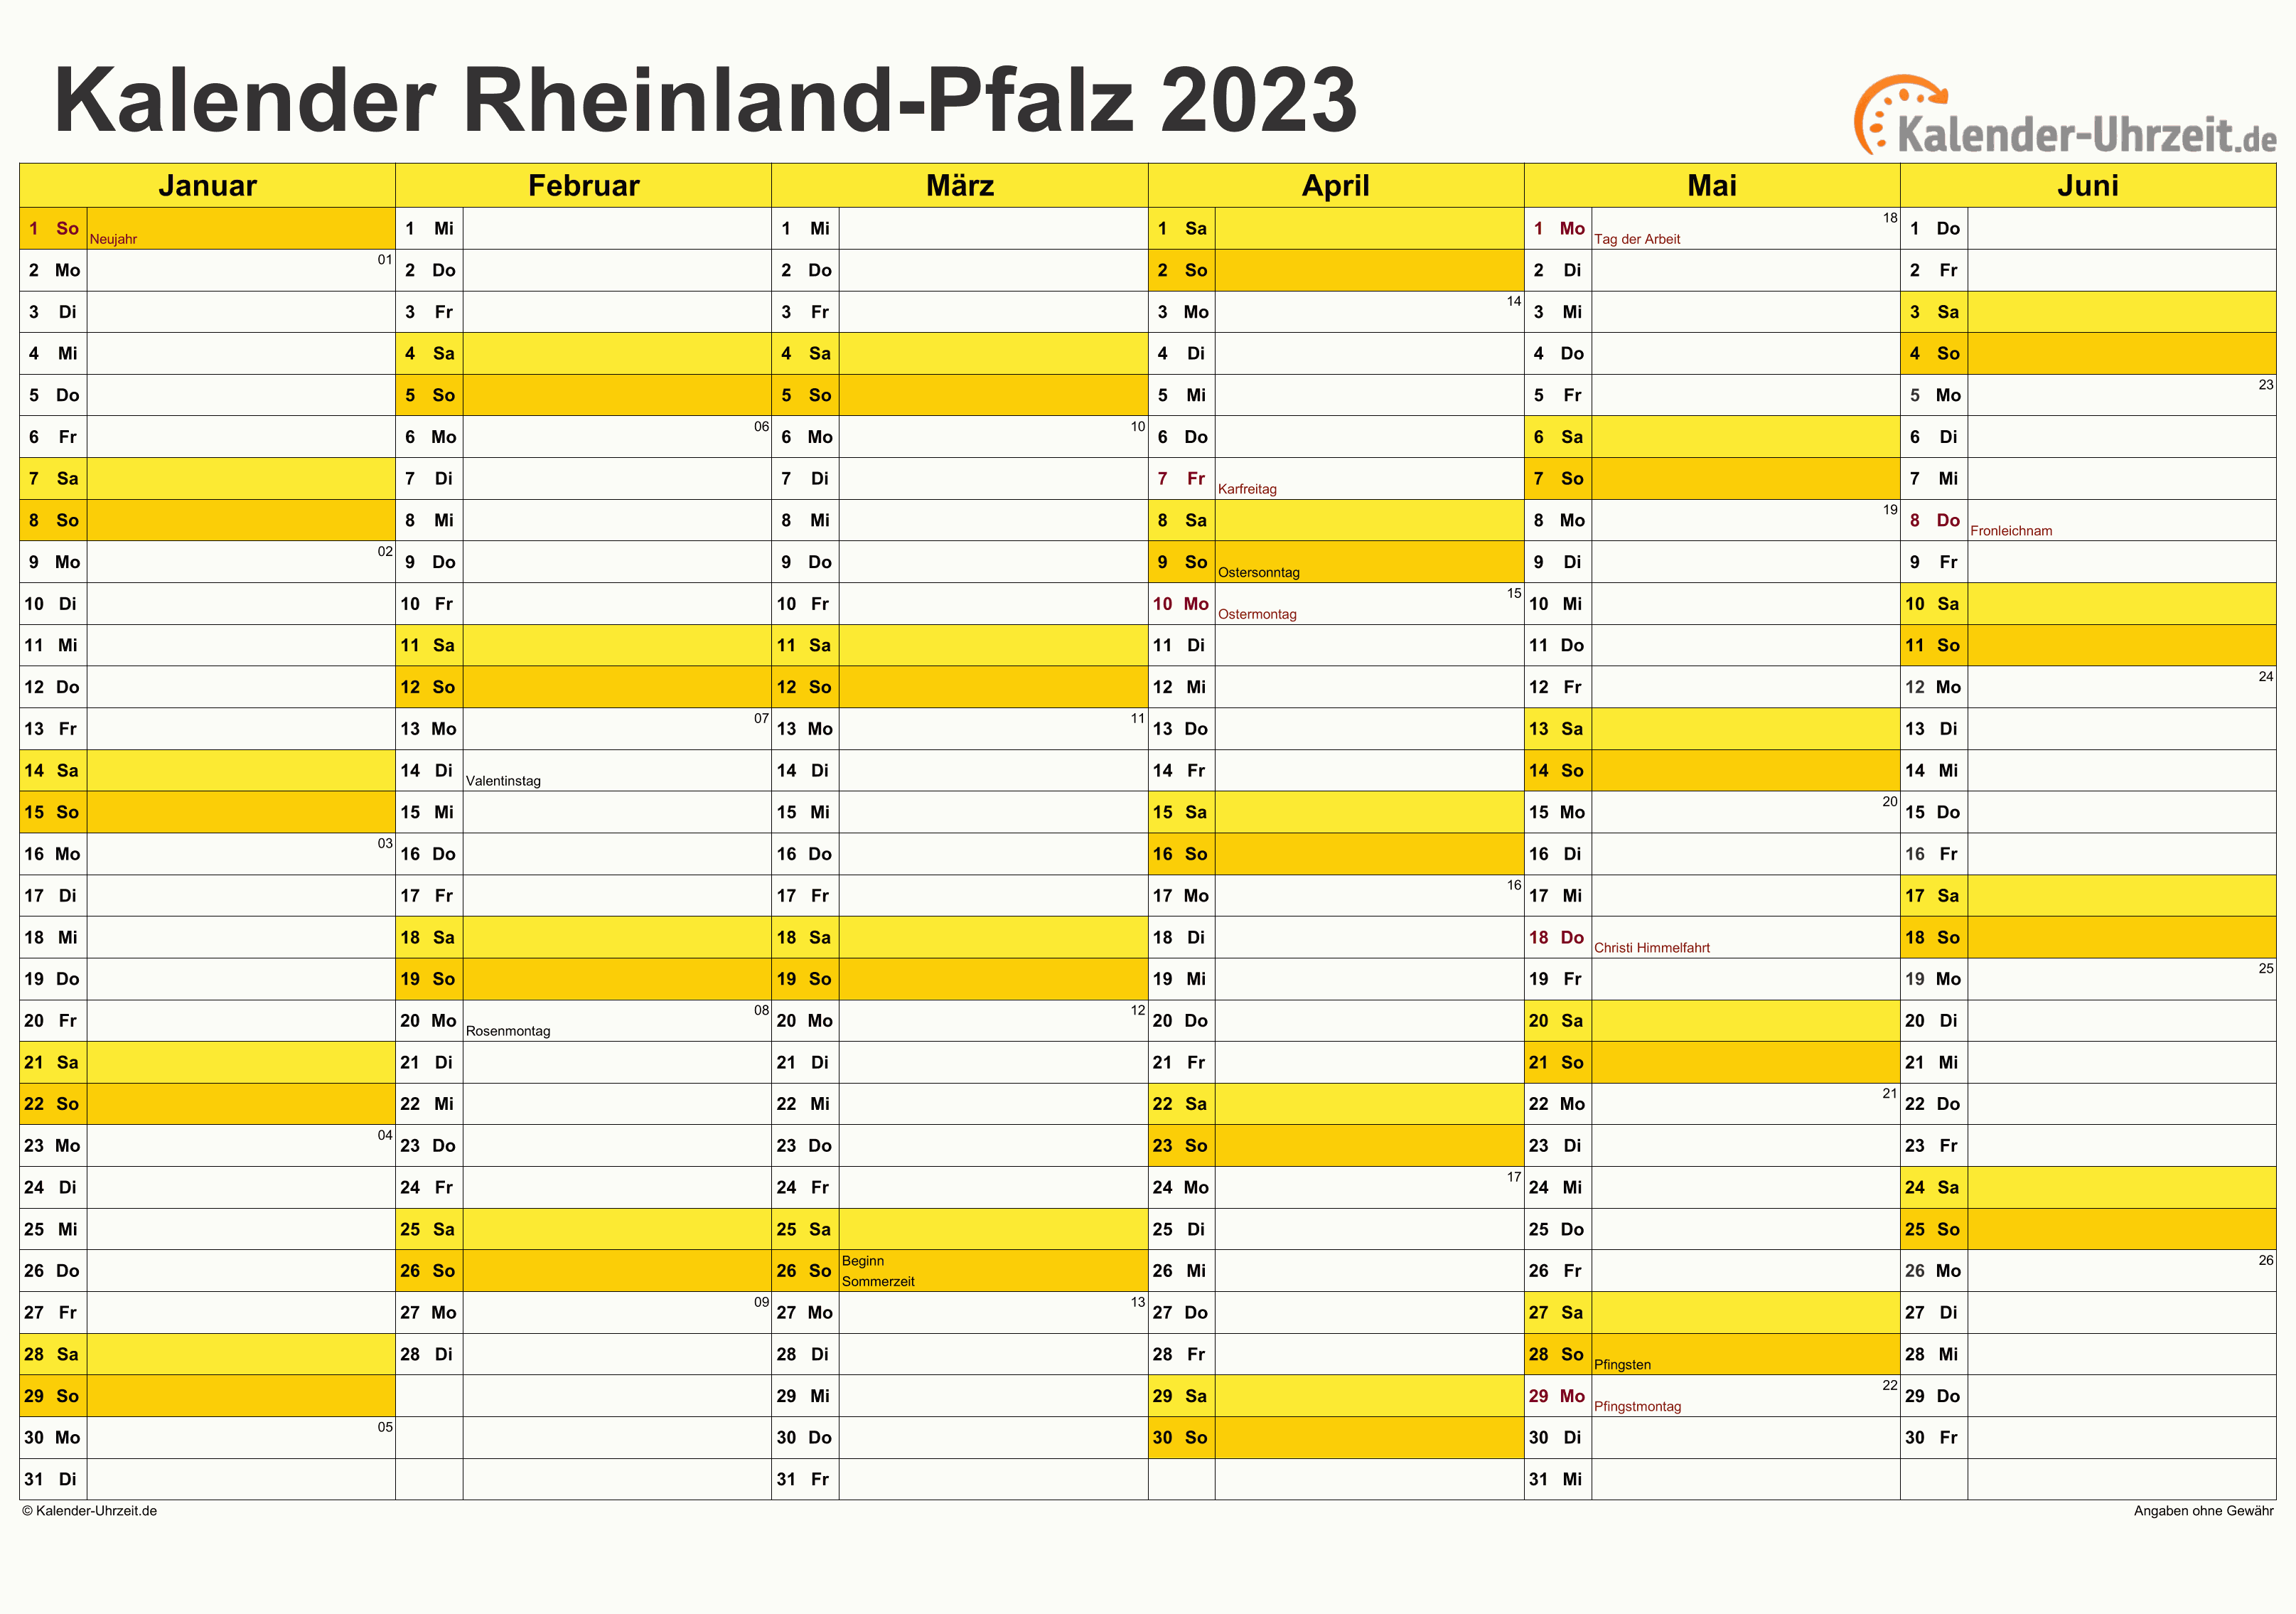 Rheinland-Pfalz Kalender 2023 mit Feiertagen - quer-zweiseitig